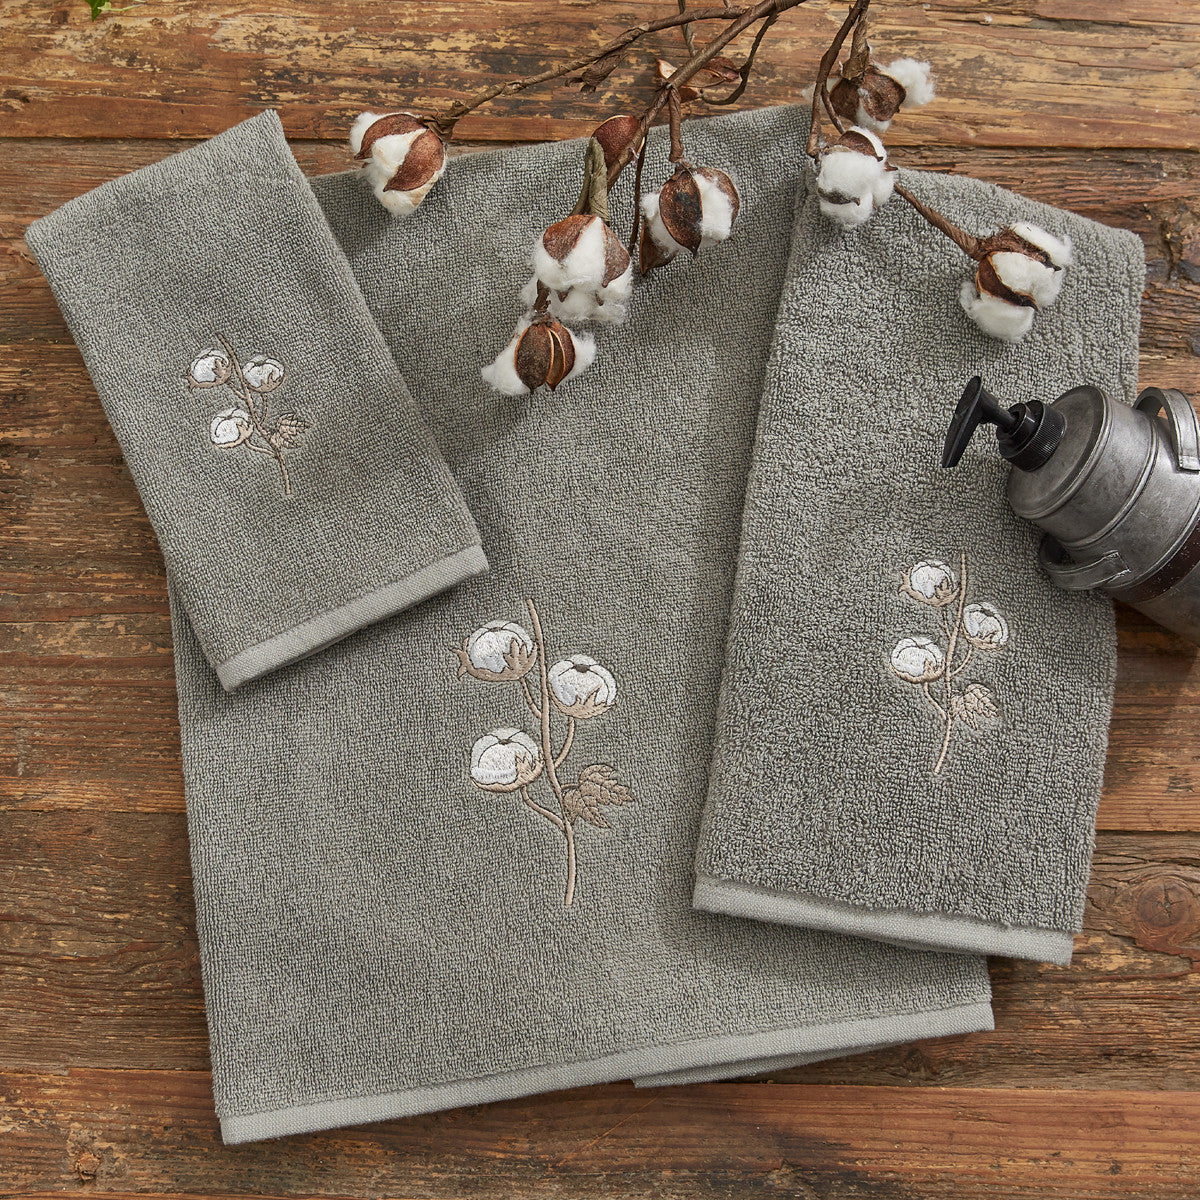 Cotton Hand Towel Set of 2  Park Designs